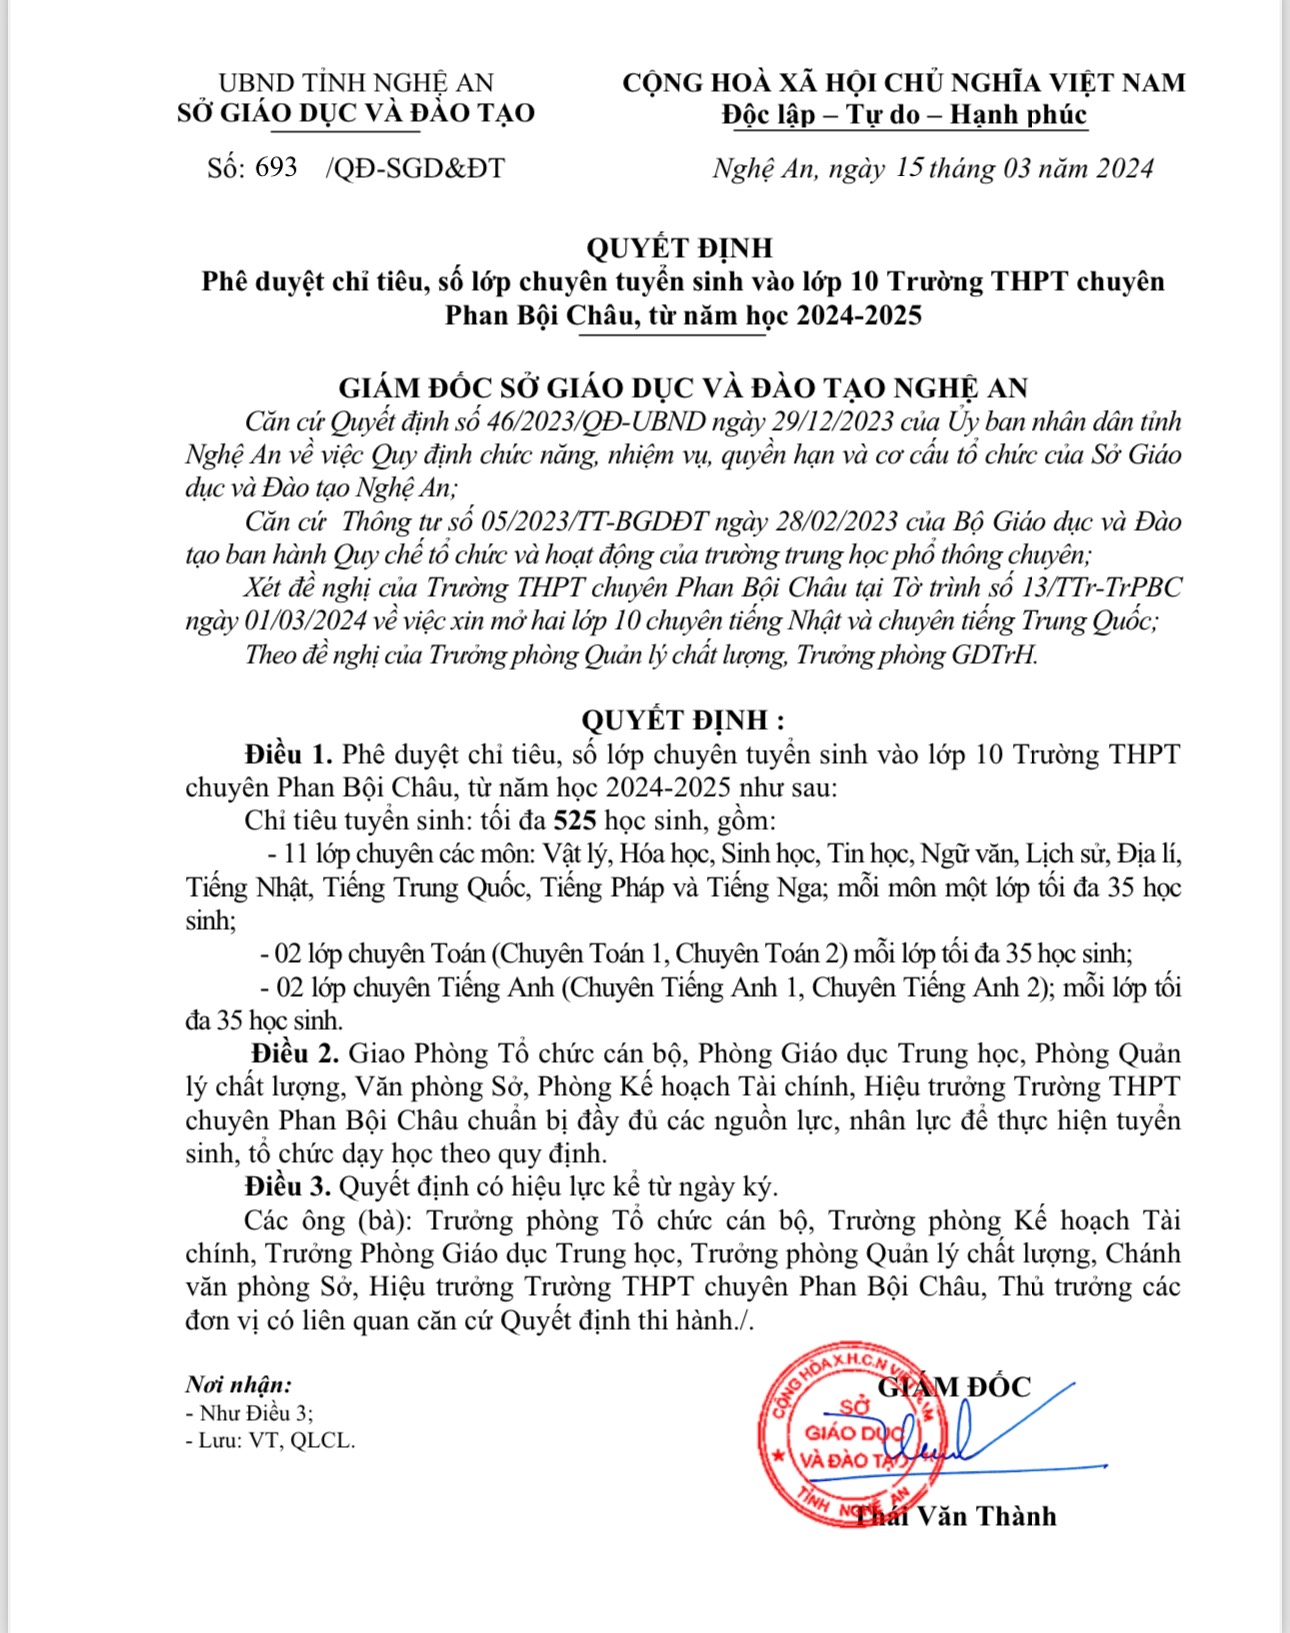 Trường THPT chuyên Phan Bội Châu quyết định thành lập lớp chuyên Trung từ năm 2024